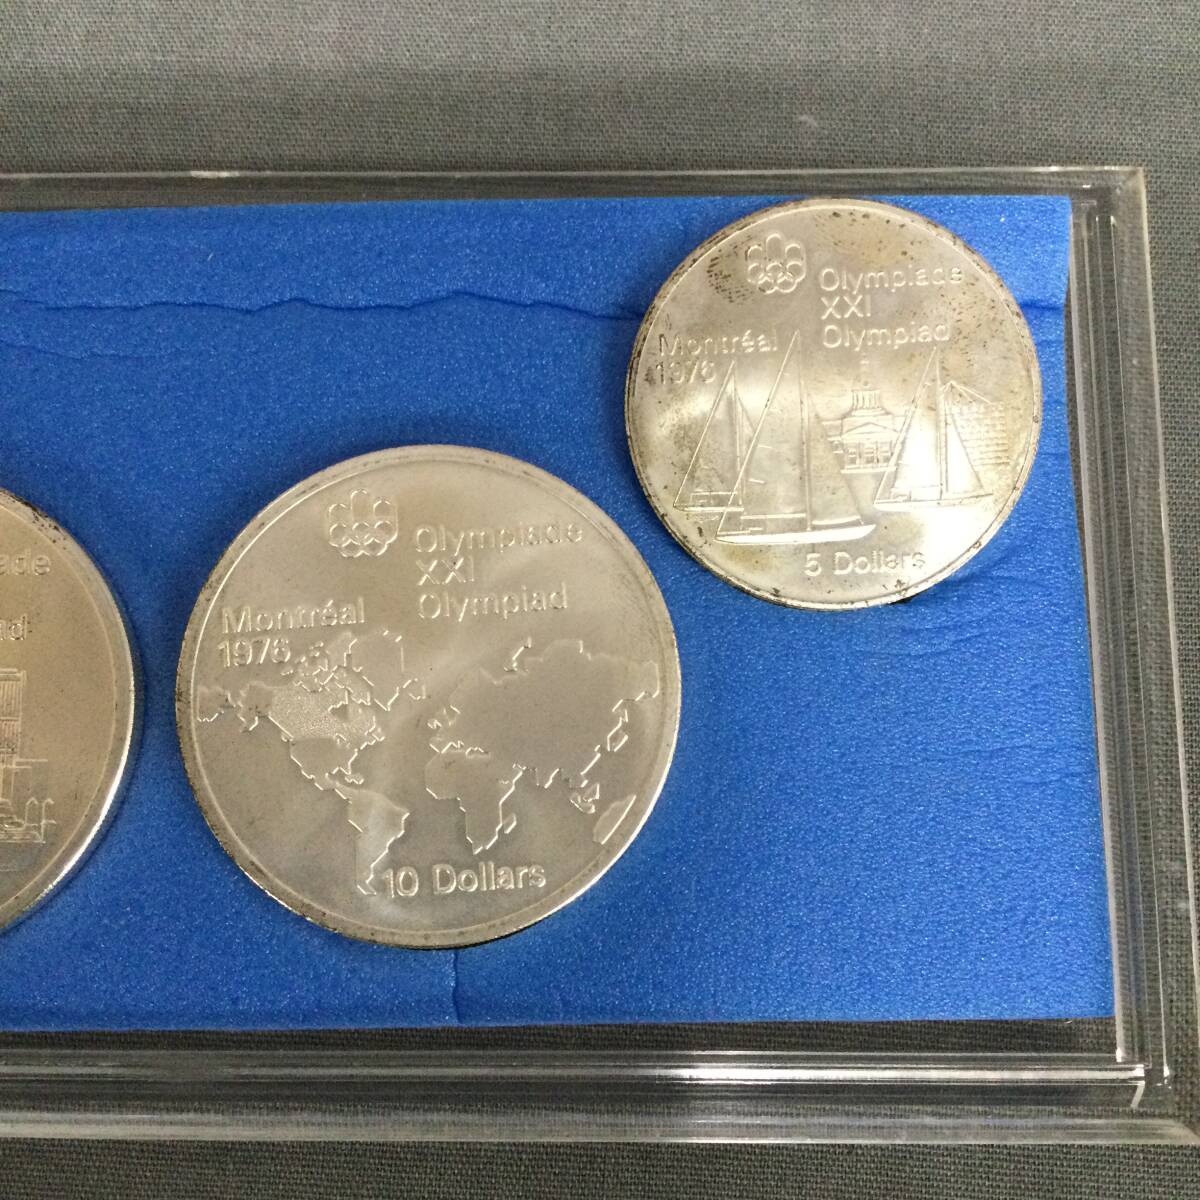 060327 257166 第21回オリンピック モントリオール大会 記念銀貨 記念コイン 日本スポーツメタル協会 コレクション の画像7